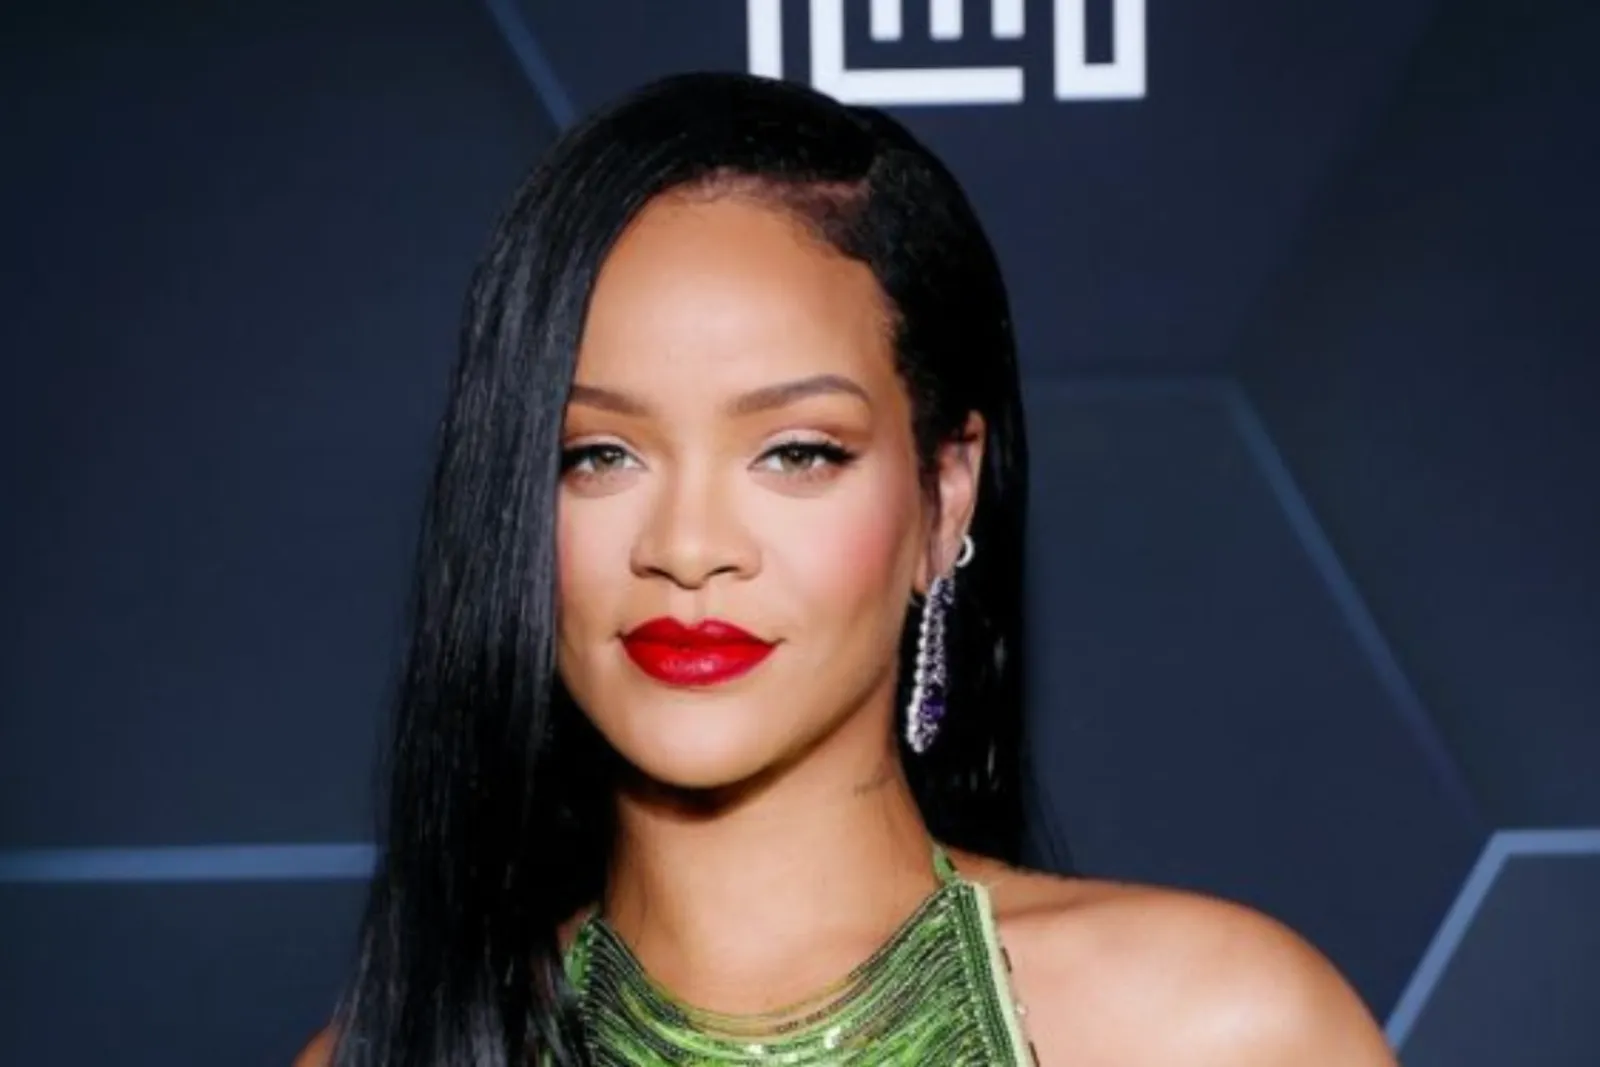 Rilis Single Terbaru "Lift Me Up", Fans Nantikan Kembalinya Rihanna